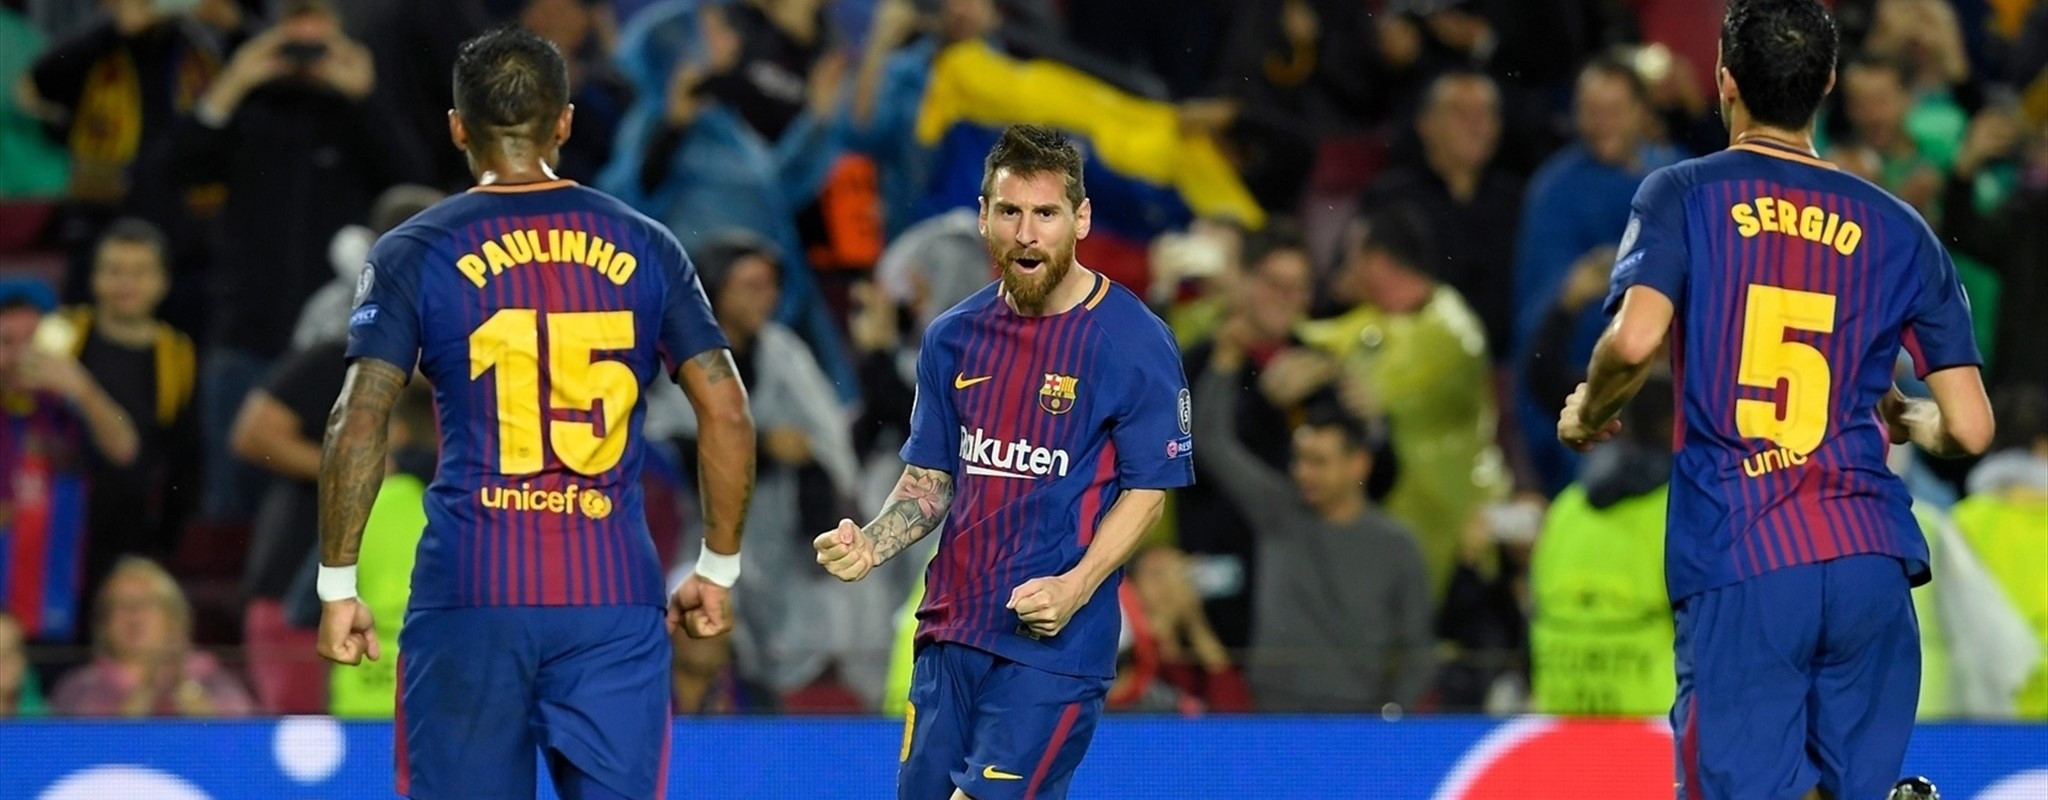 Barcelona derrota al Olympiacos; Messi logra su gol 100 en Champions